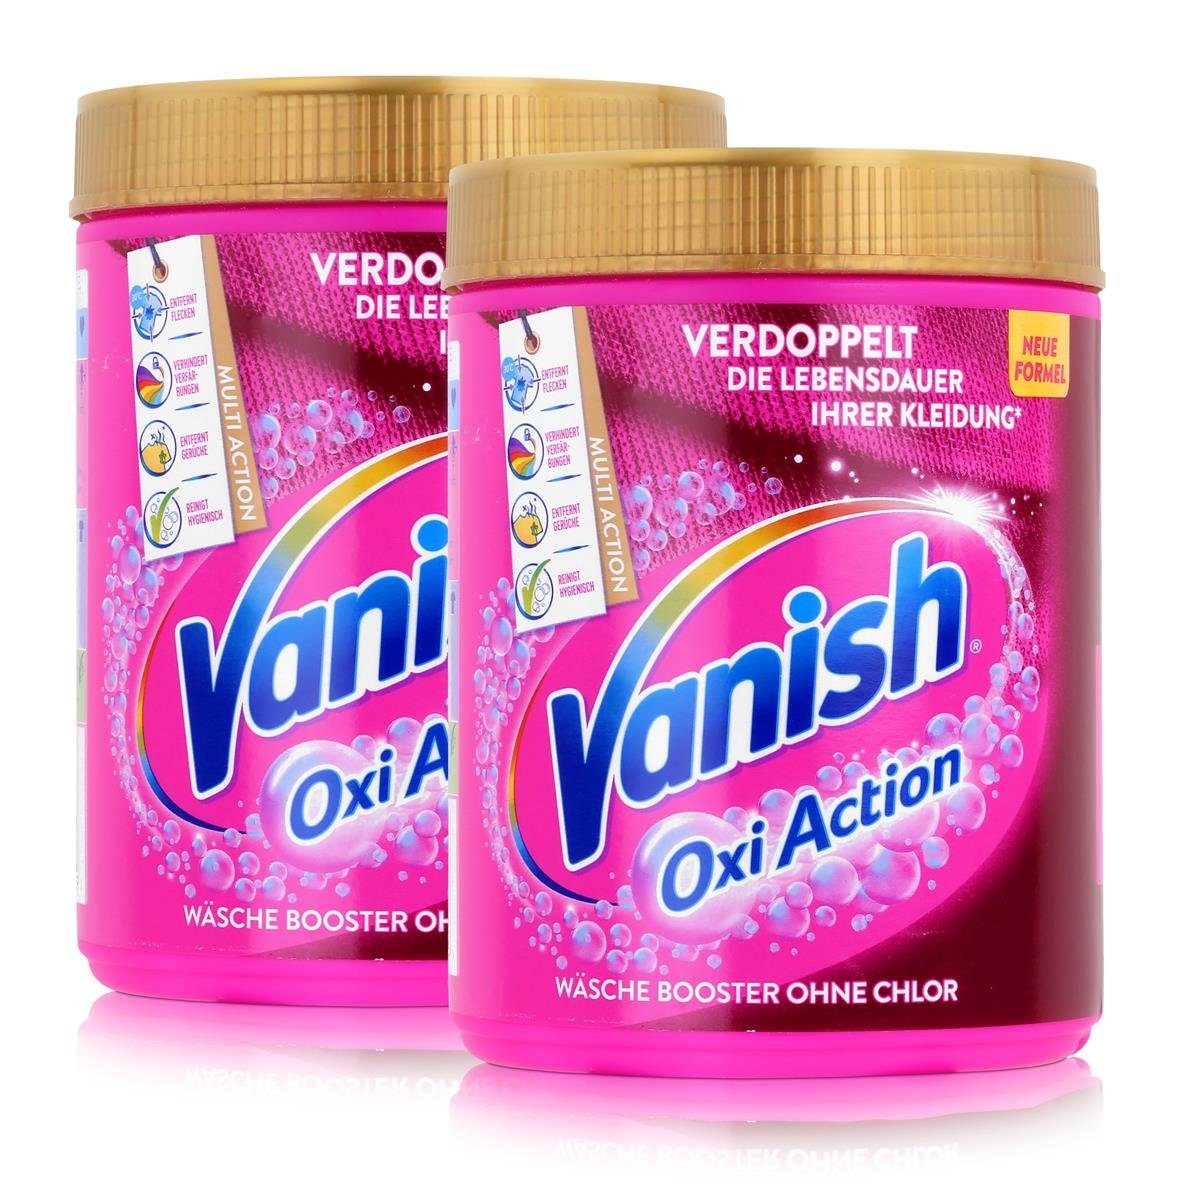 VANISH Vanish Oxi Action Wäsche Booster ohne Chlor 550g Pulver (2er Pack) Spezialwaschmittel